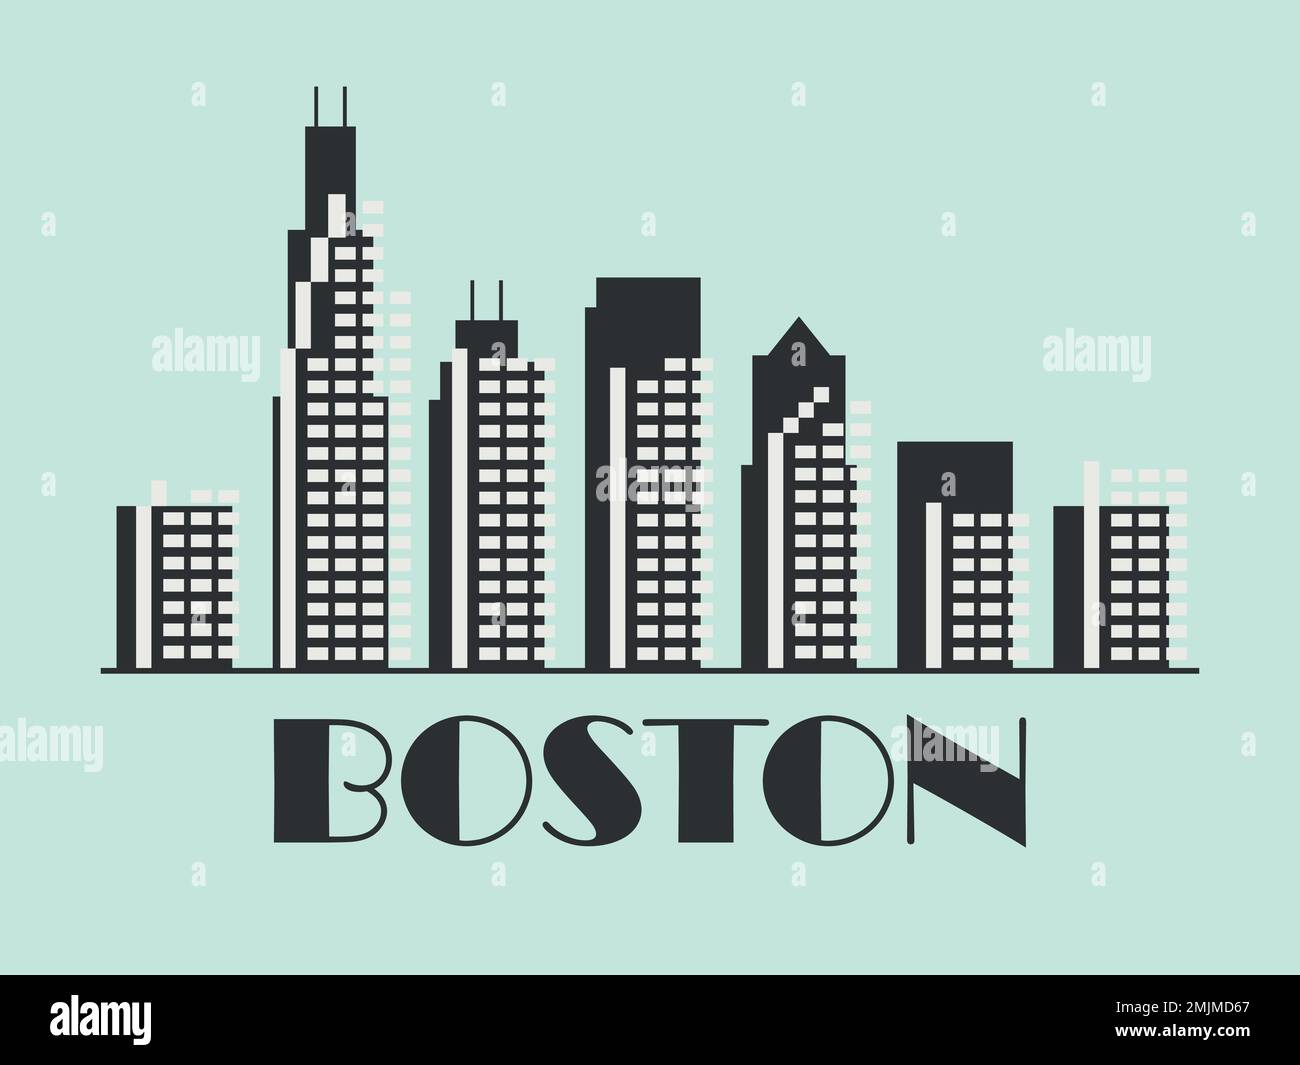 Boston in stile vintage. Bandiera retrò della città di Boston con grattacieli in stile lineare. Design per stampa, poster e materiale promozionale. Illustrazione Vettoriale